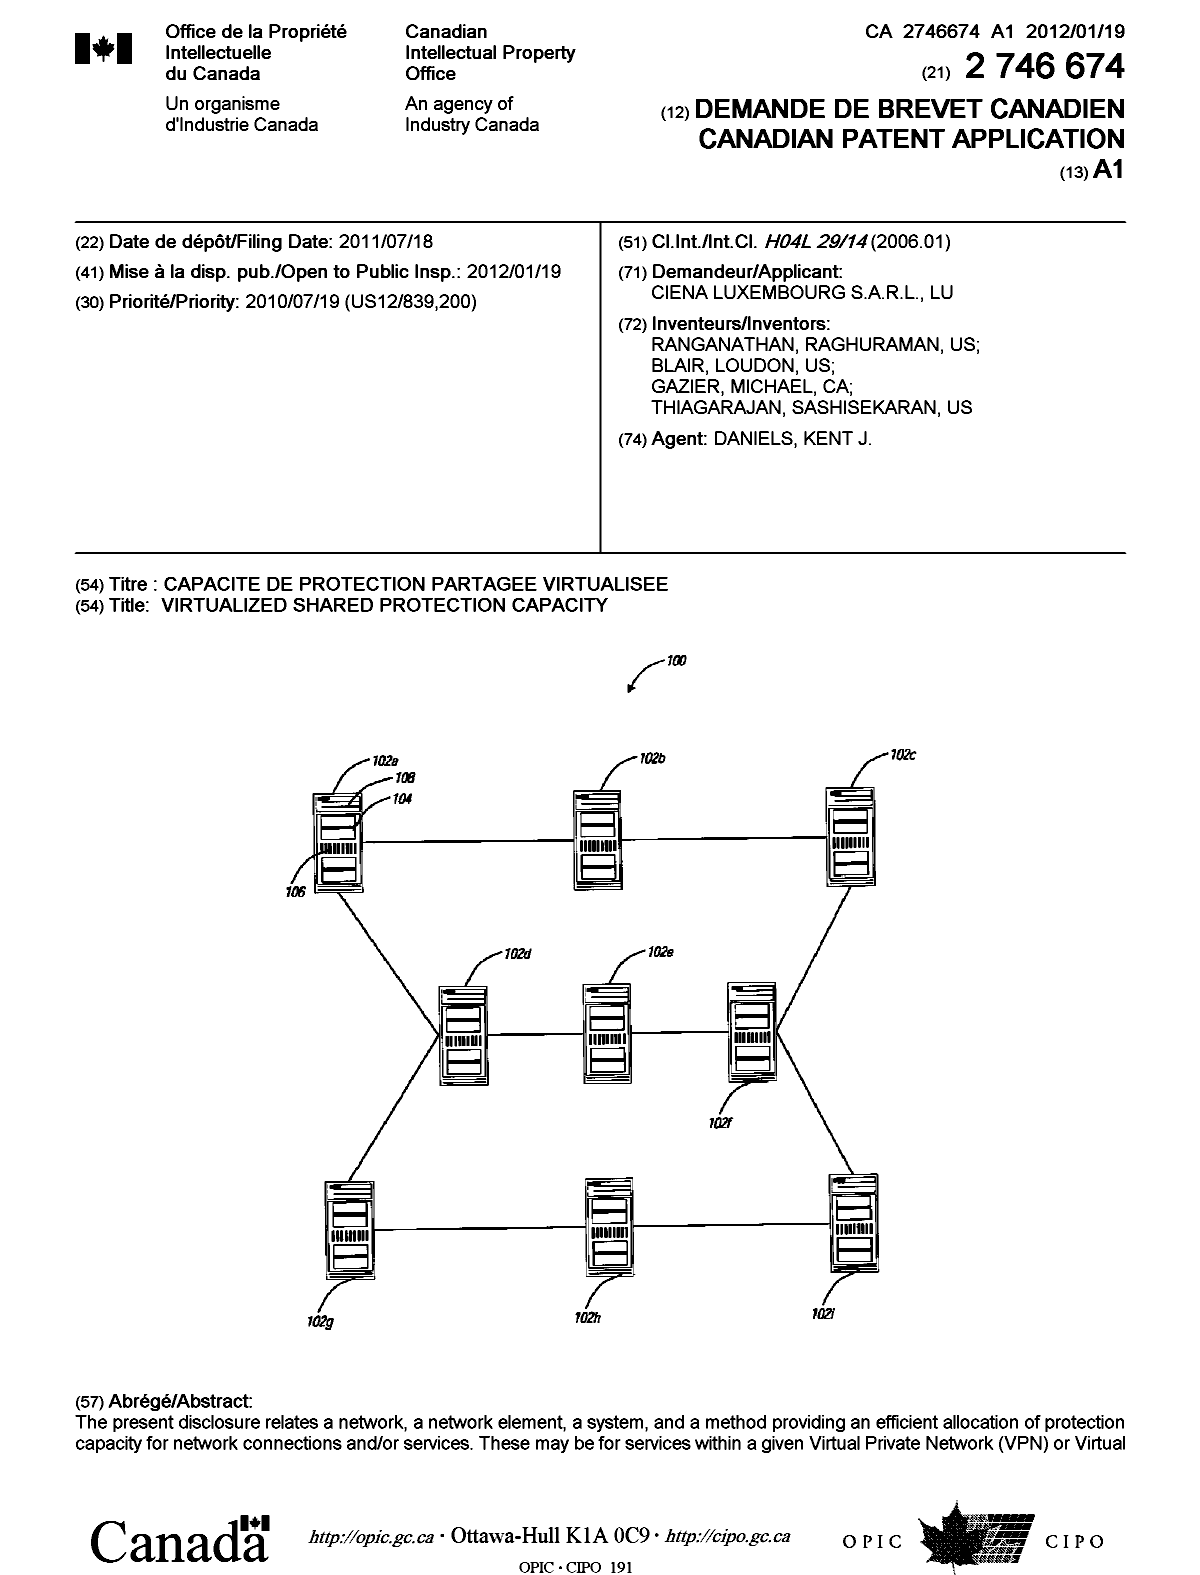 Document de brevet canadien 2746674. Page couverture 20111206. Image 1 de 2